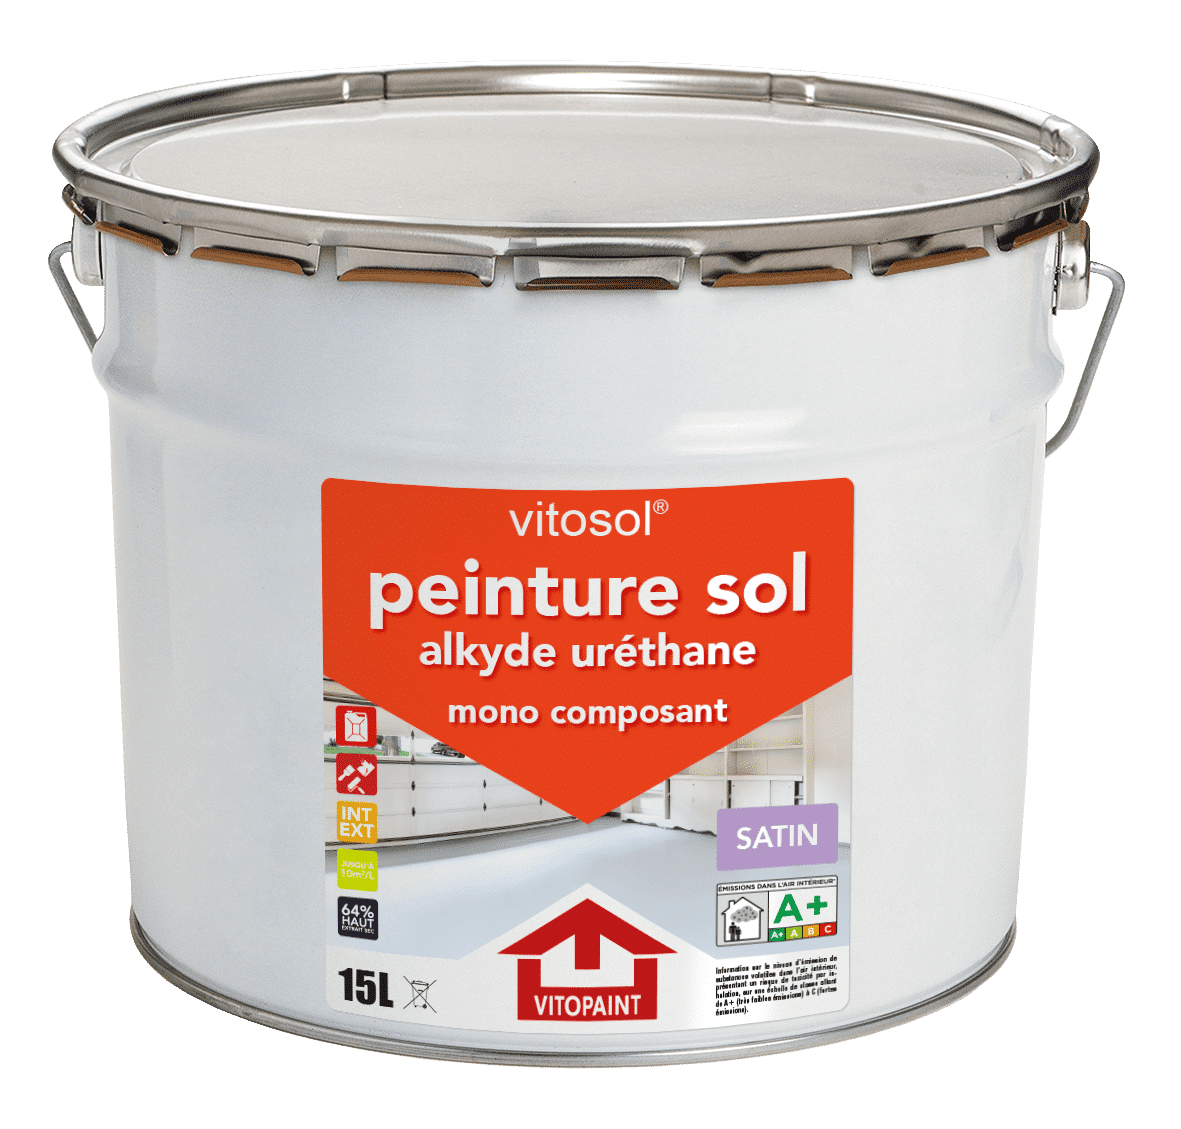 COMUS SOL Peinture alkyde uréthane pour les sols - COMUS